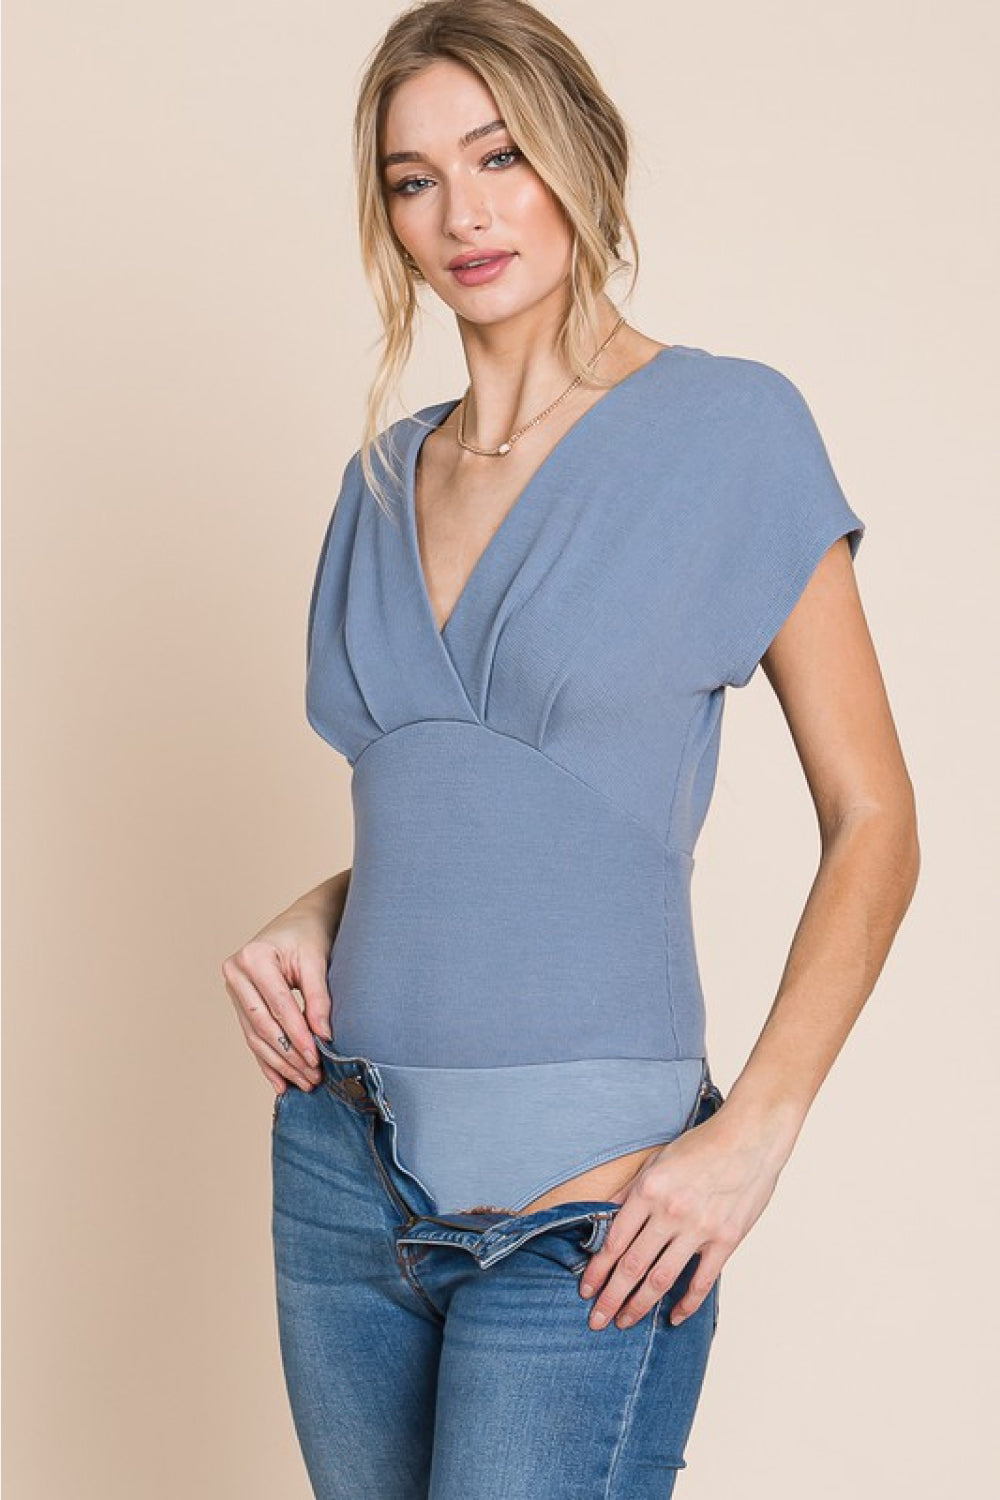 HEYSON Flatter Me Thermal V-Neck Bodysuit-Trendsi-Misty Blue-S-[option4]-[option5]-[option6]-[option7]-[option8]-Shop-Boutique-Clothing-for-Women-Online